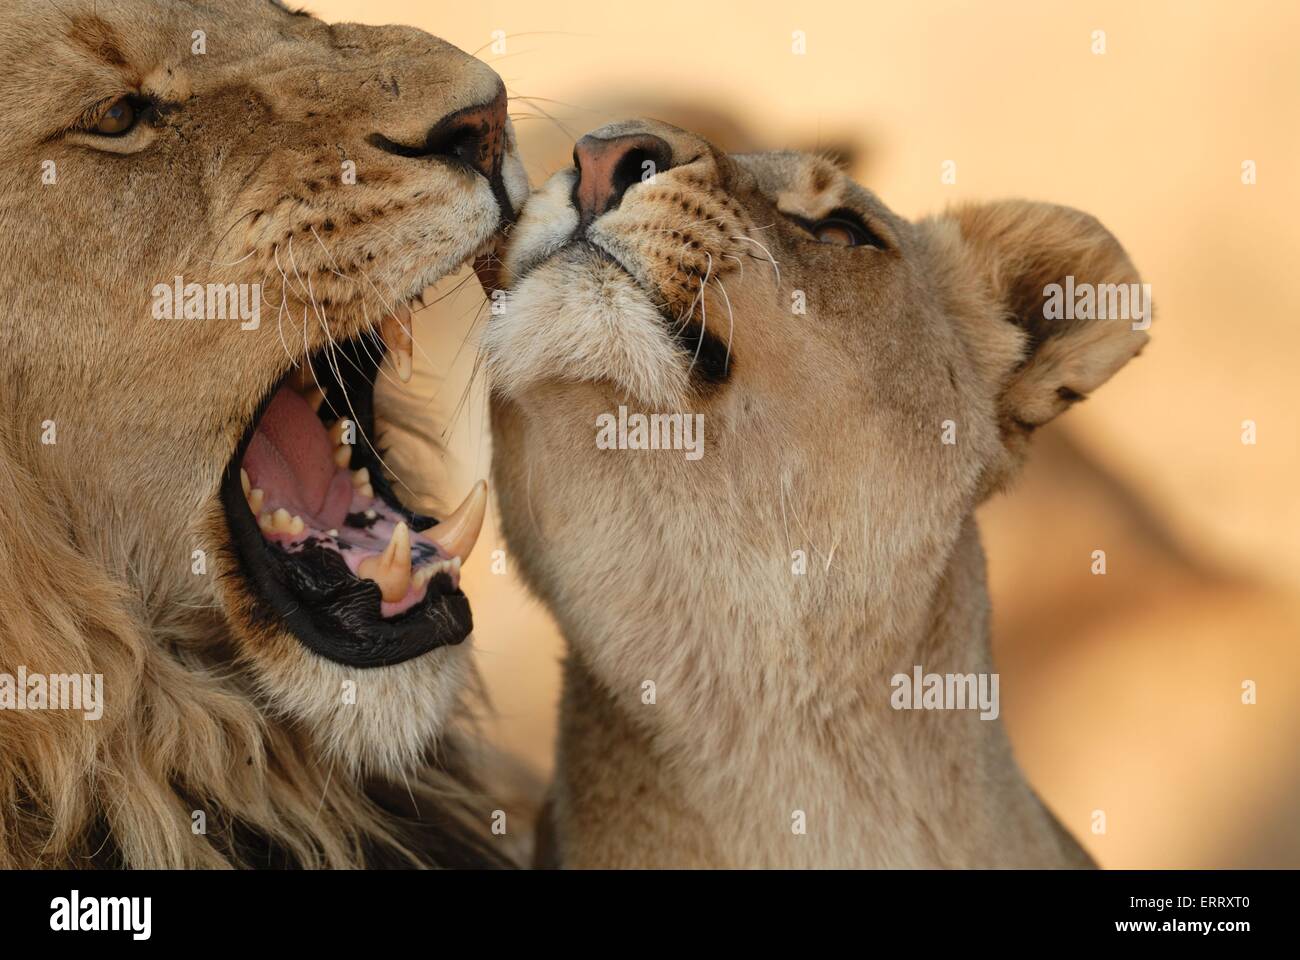 lions Stock Photo